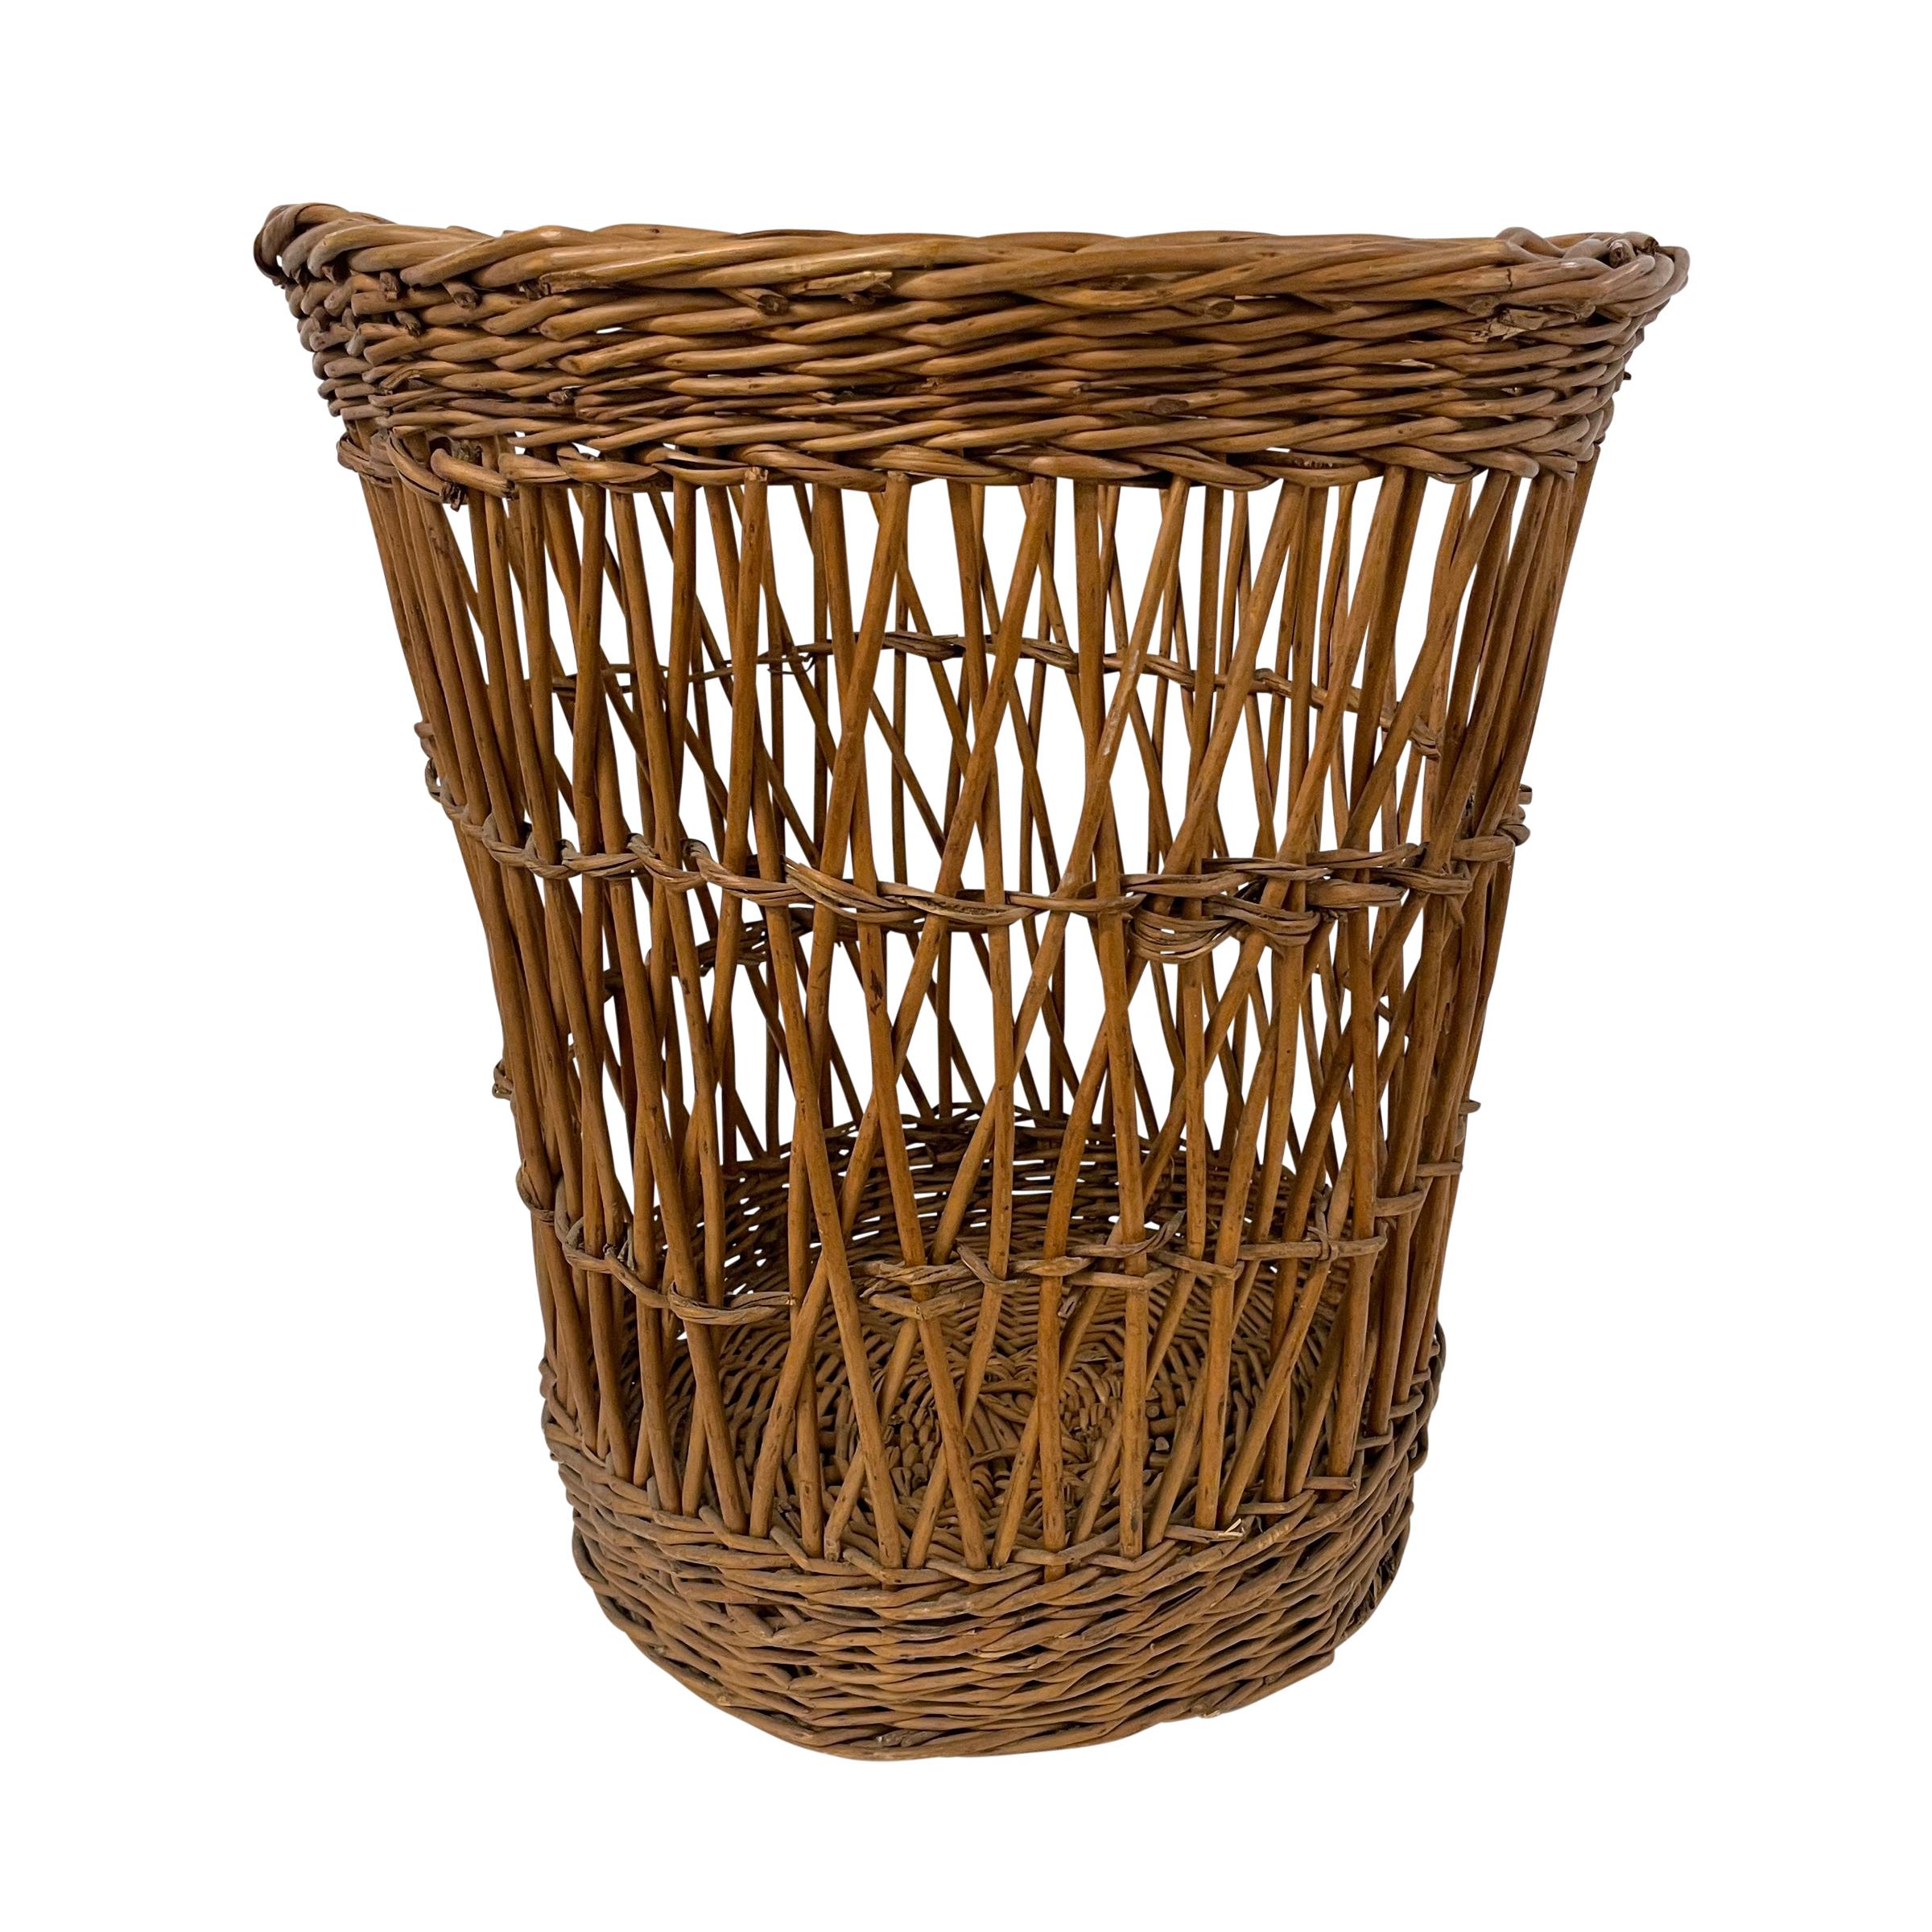 Rustic French Wicker Bakery Basket